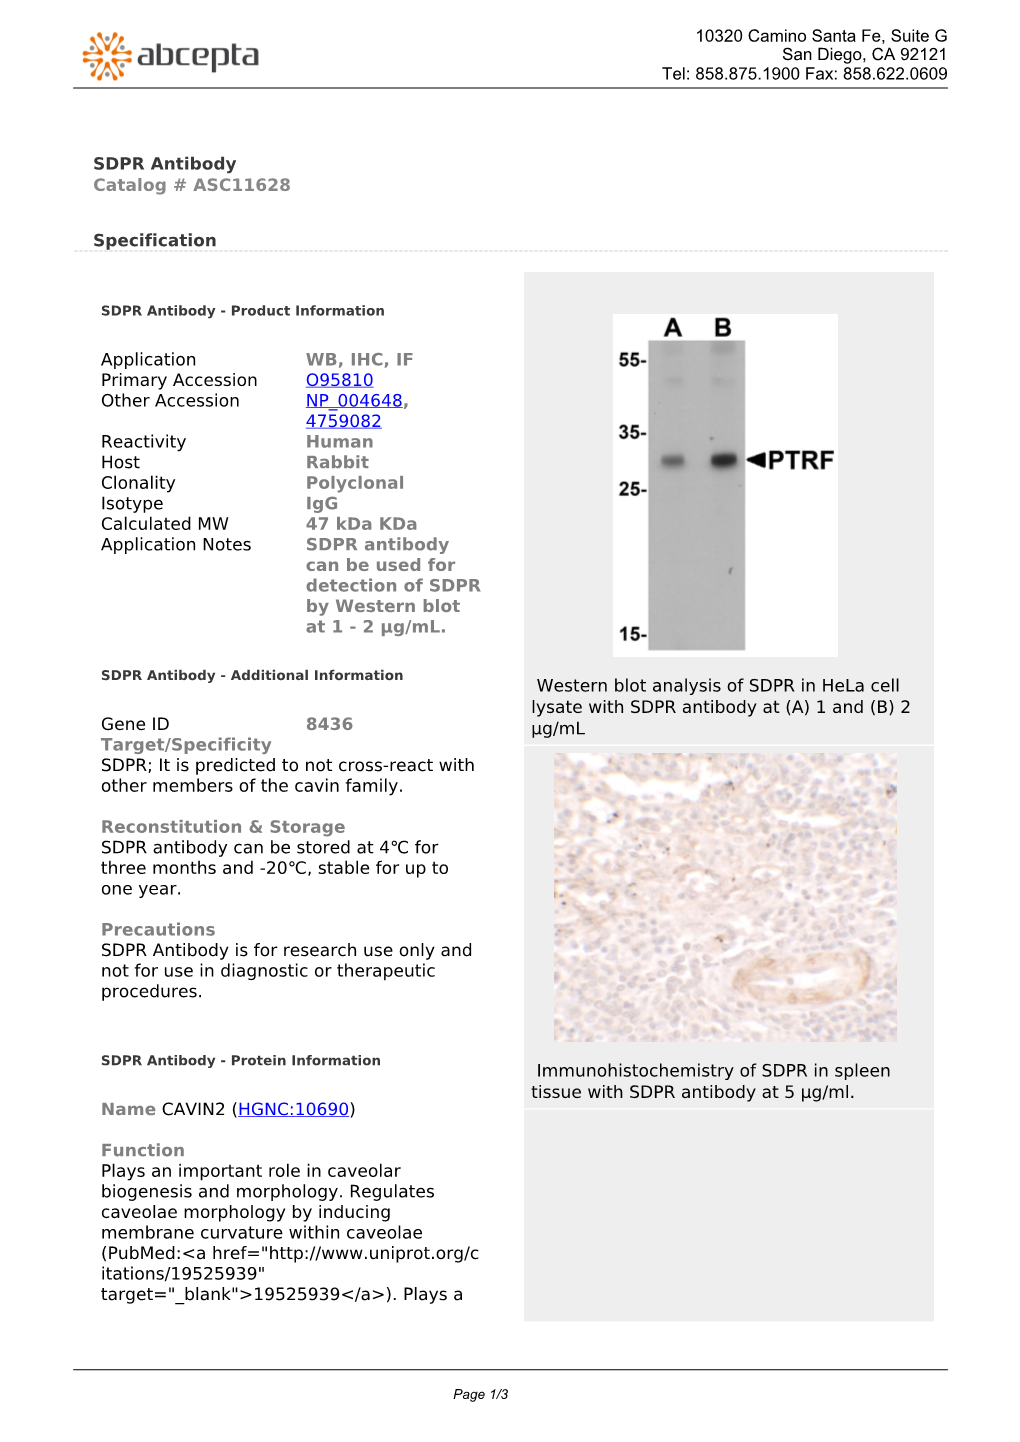 SDPR Antibody Catalog # ASC11628